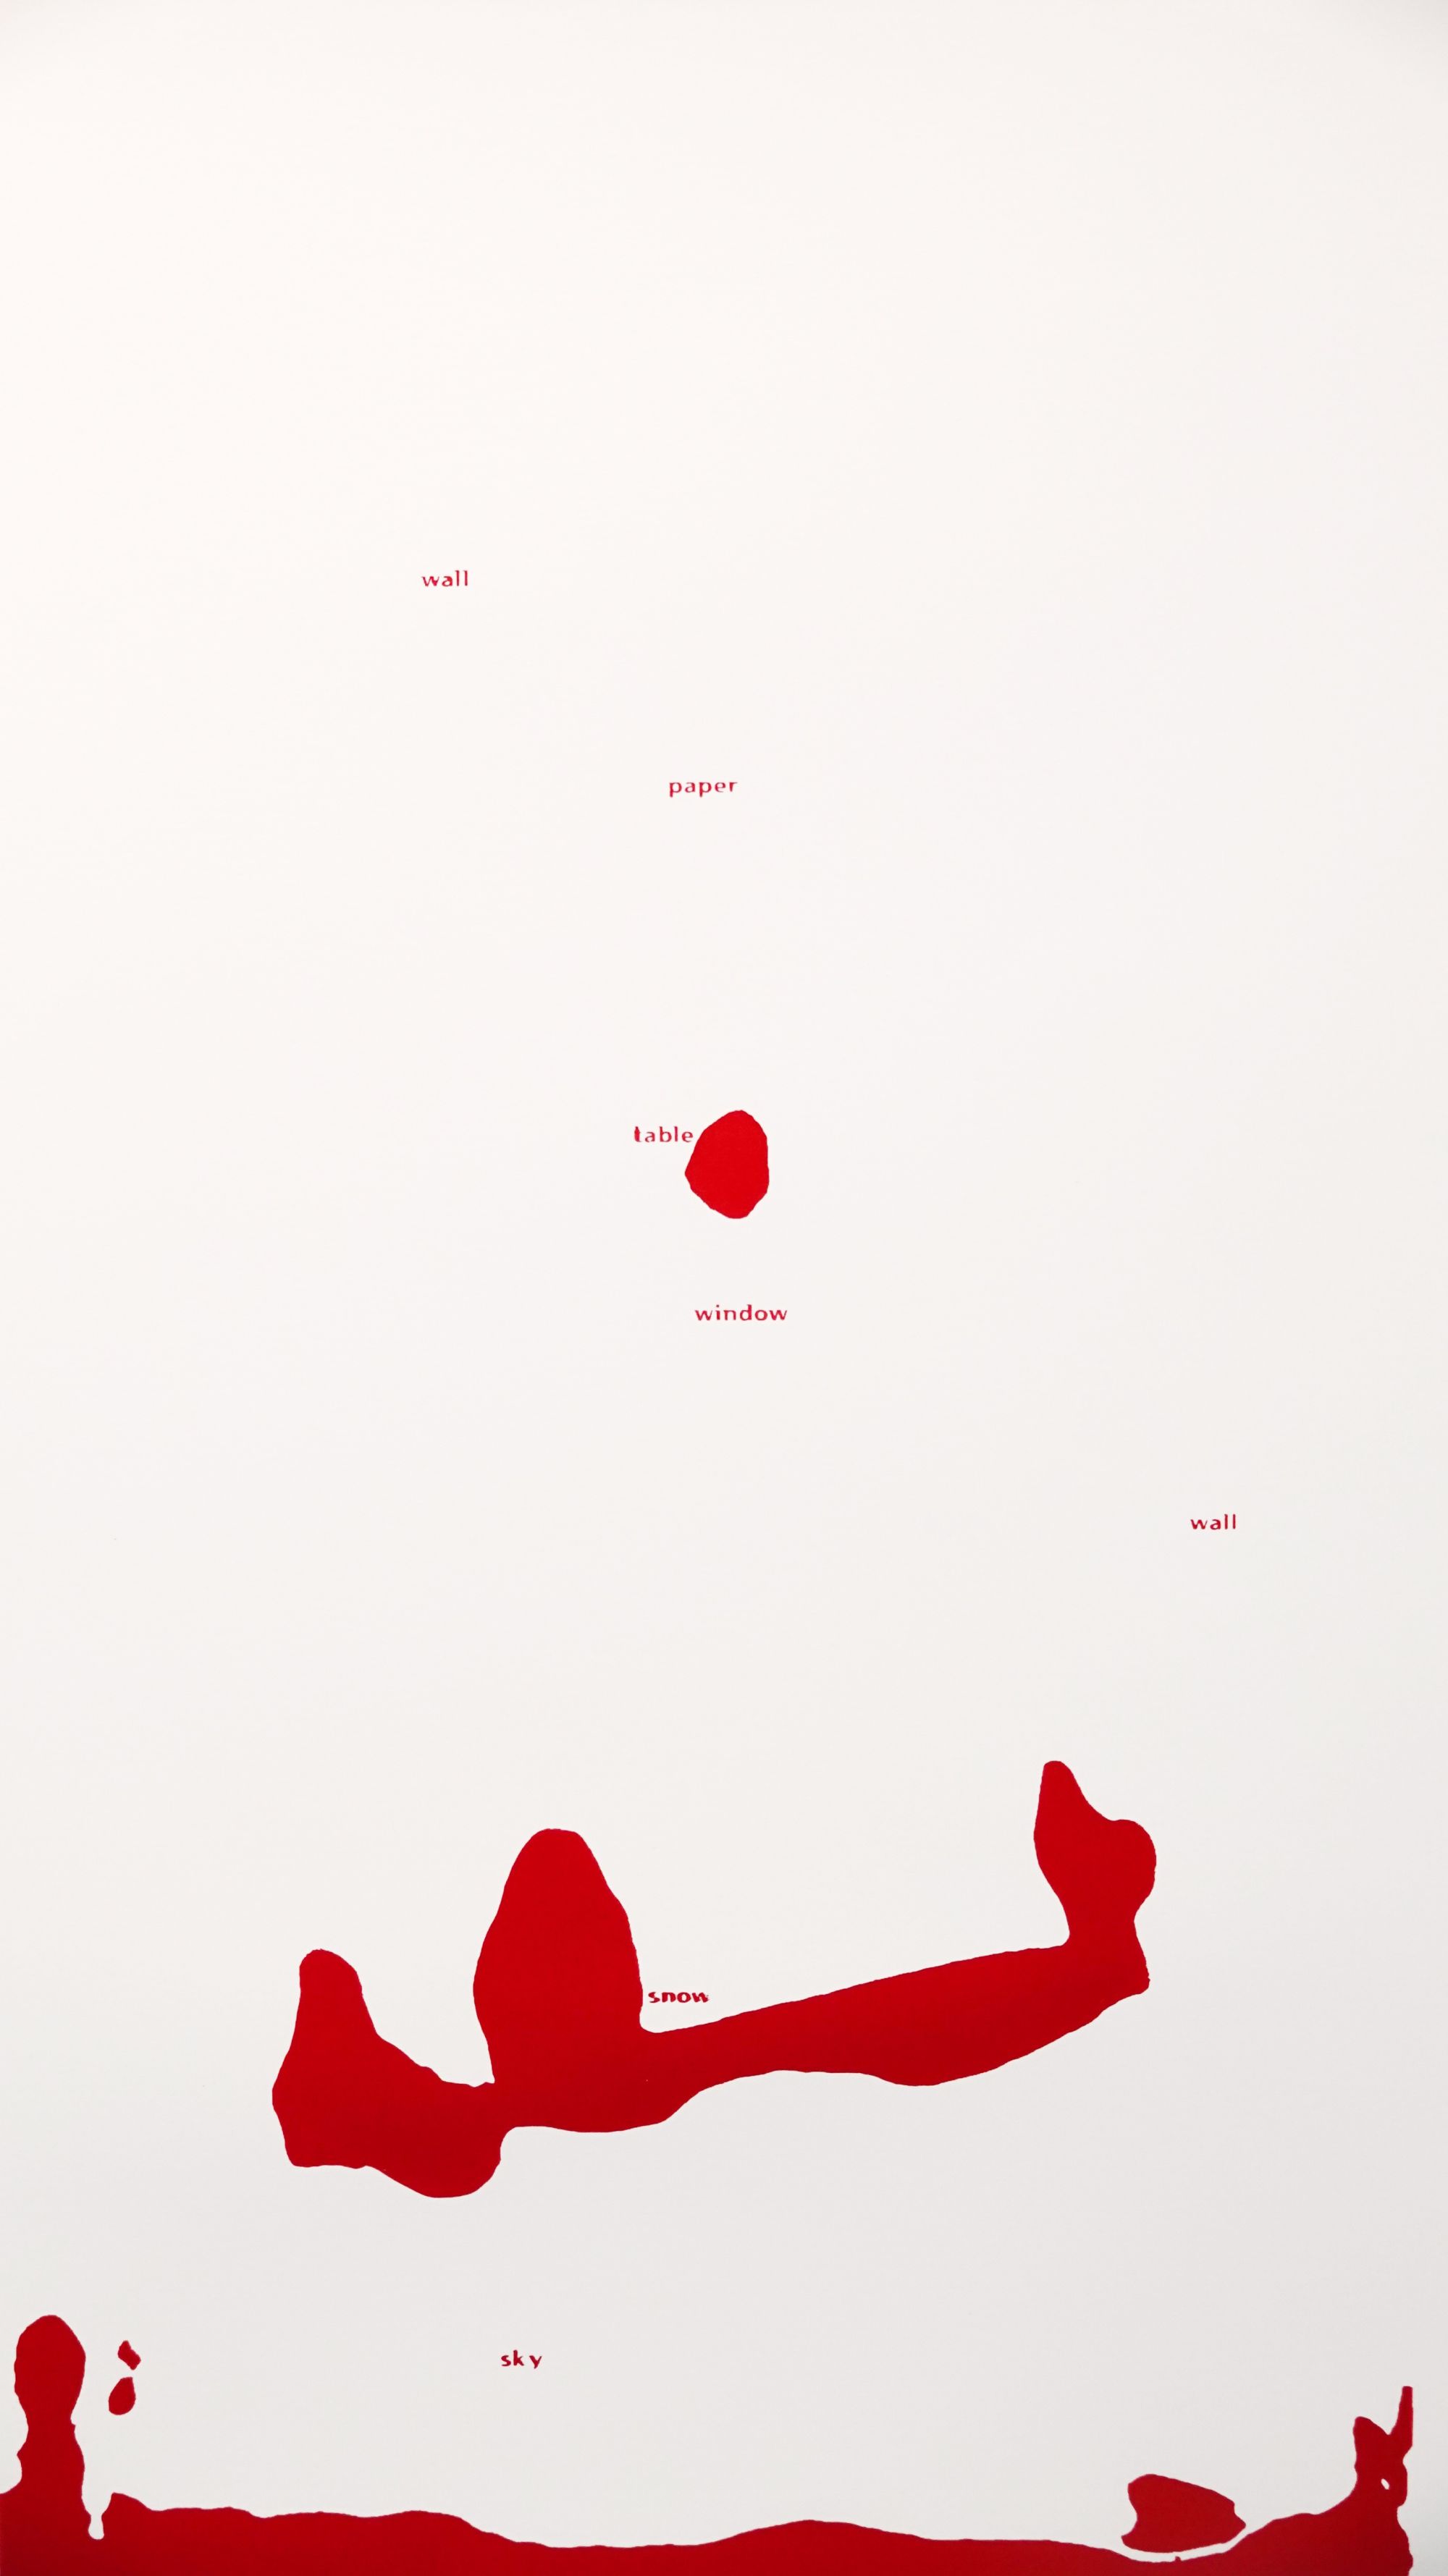 《인식체험 I : 카지미르 말레비치(Kasimir Malevitch)의 ‘검은 사각형과 붉은 사각형’》, 2021, 객체인식 모델, 실크스크린 인쇄, 71x44cm